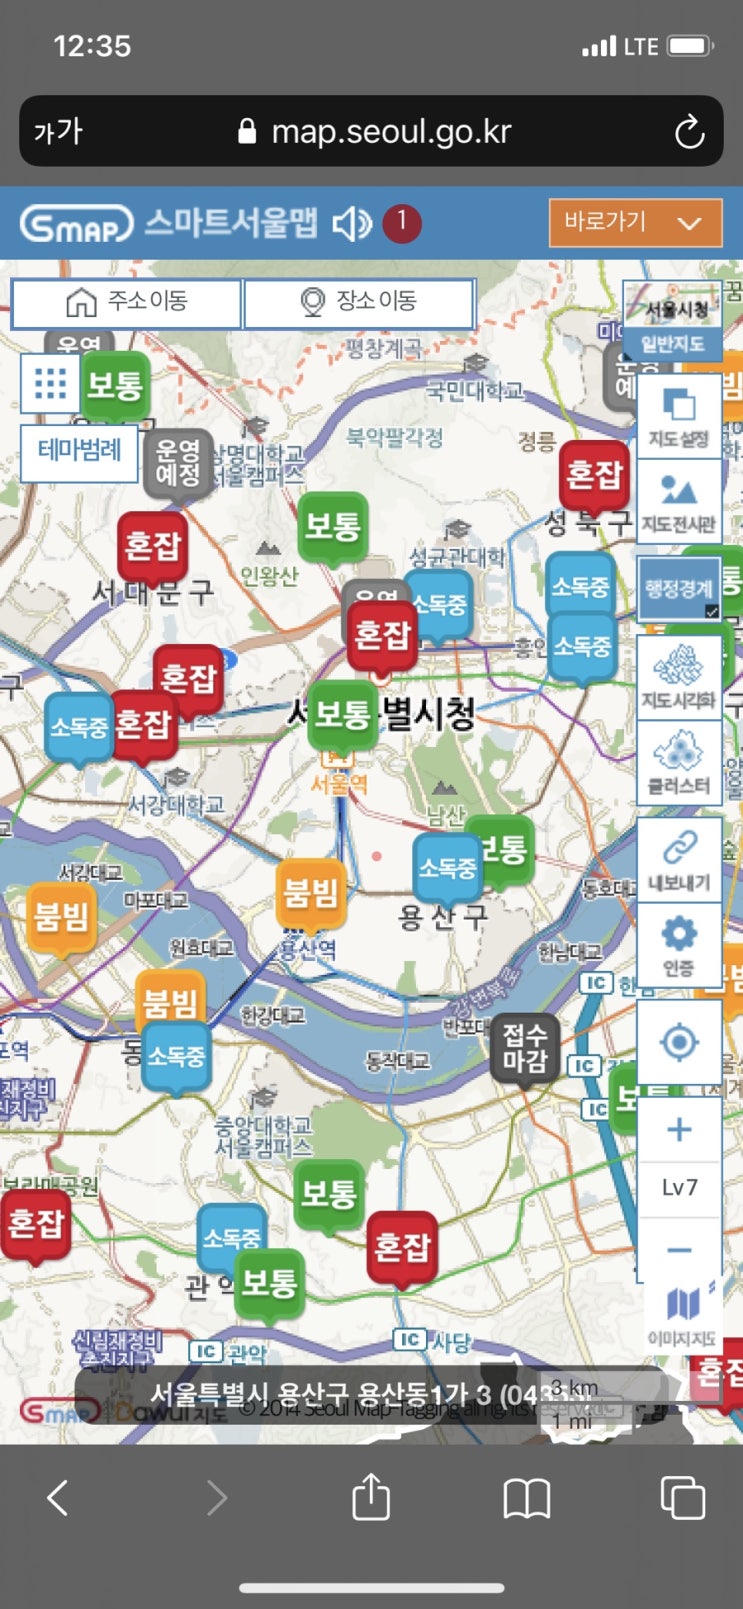 코로나 검사 후기 및 서울선별진료소 혼잡도 확인하기!